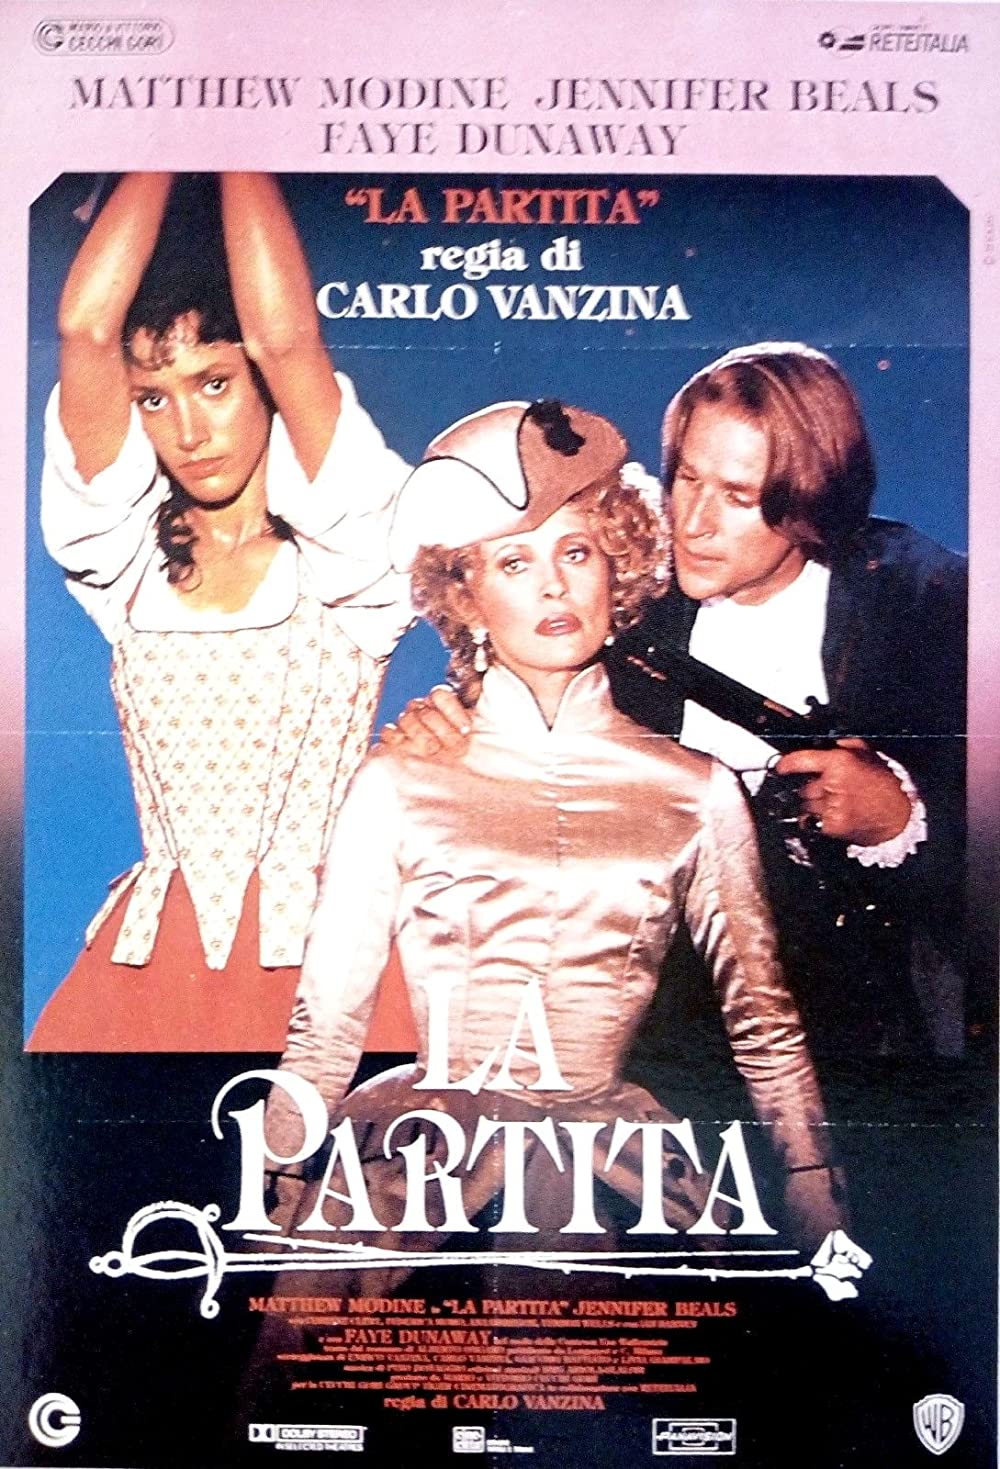 Filmbeschreibung zu La Partita